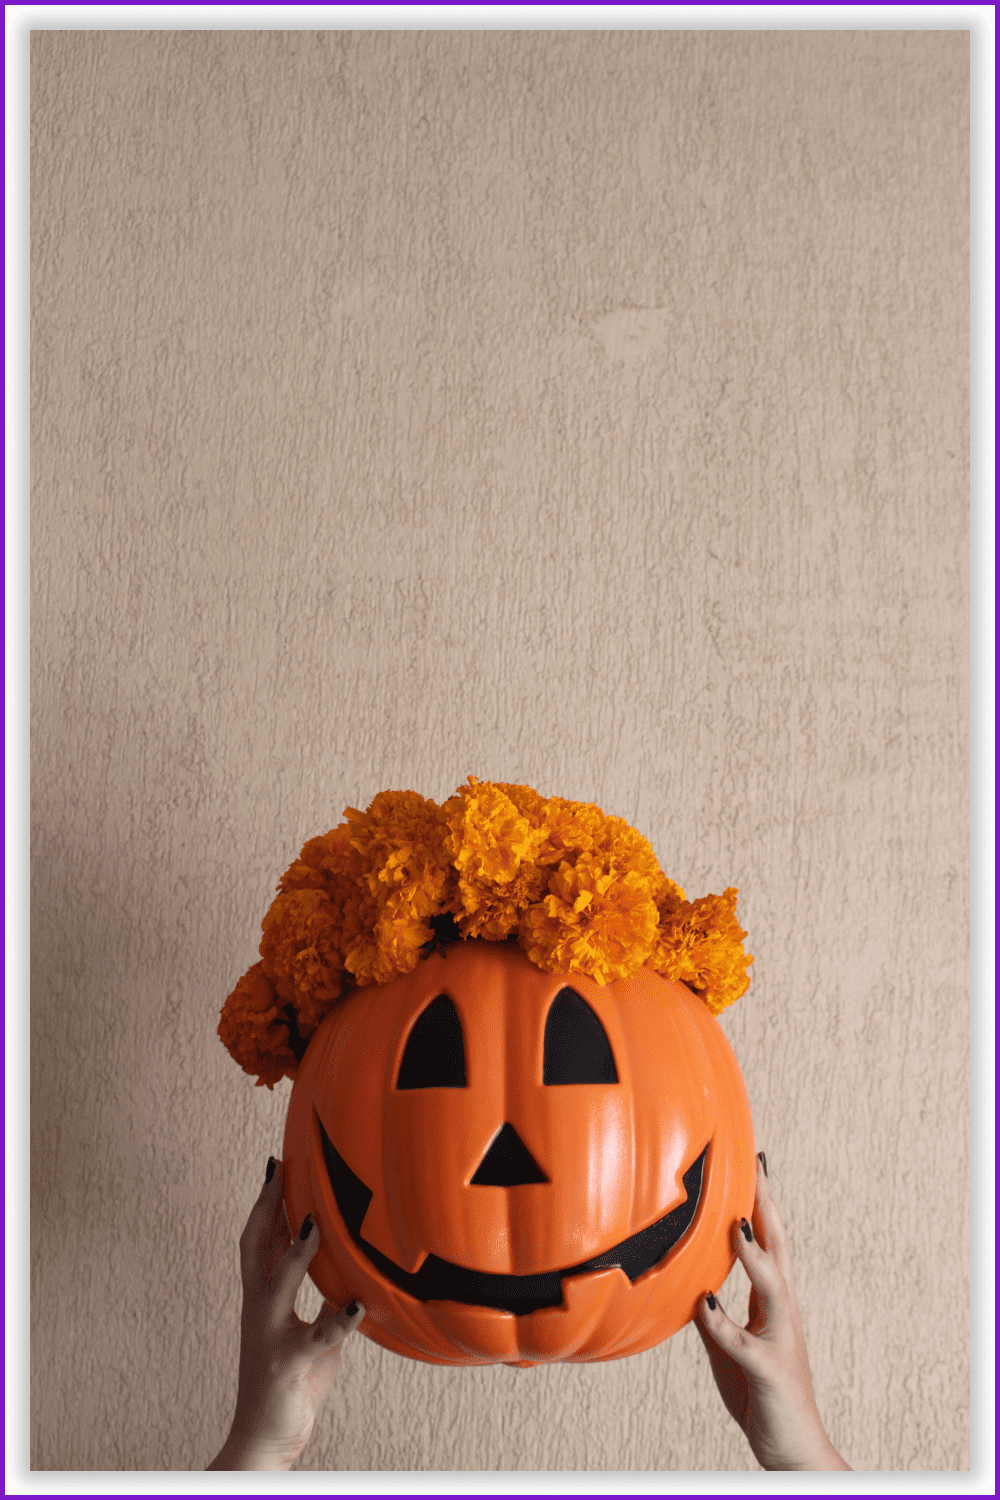 Halloween pumpkin with orange flower hair.